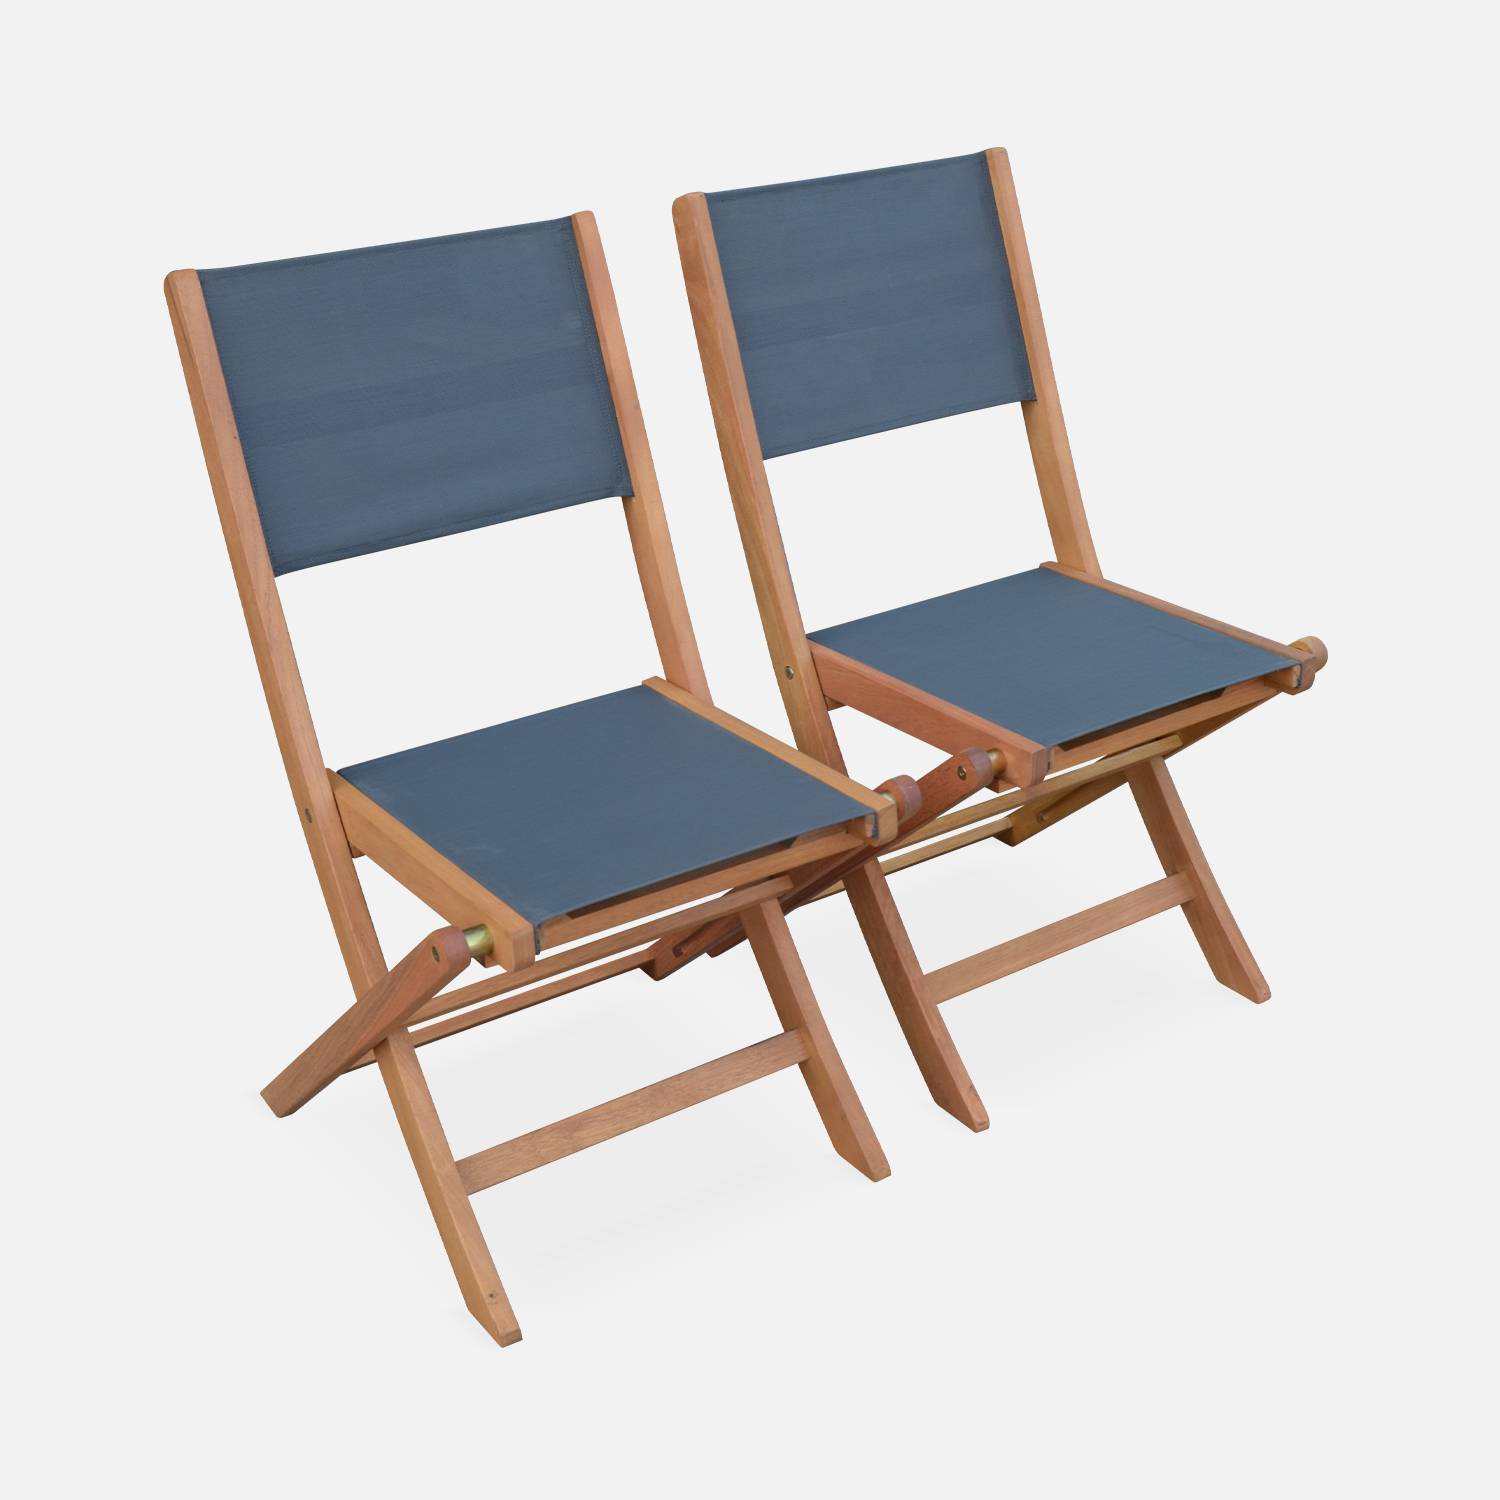 Lotto di 2 sedie da giardino in legno, modello: Almeria, 2 sedie pieghevoli, in eucalipto FSC,  colore: Grigio/Antracite | sweeek